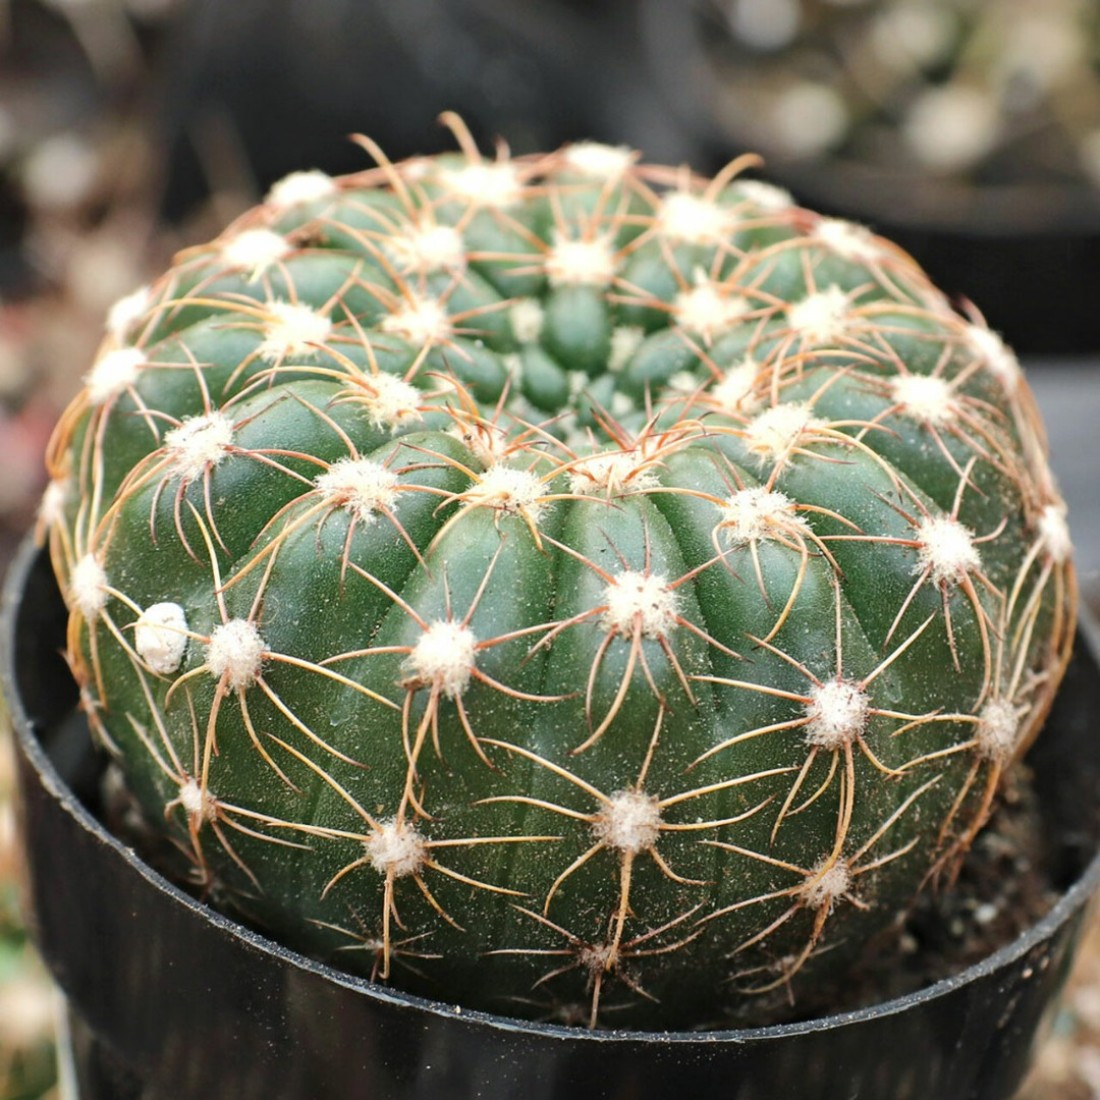 Notocactus uebelmannianus (Parodia werneri) cactus plant